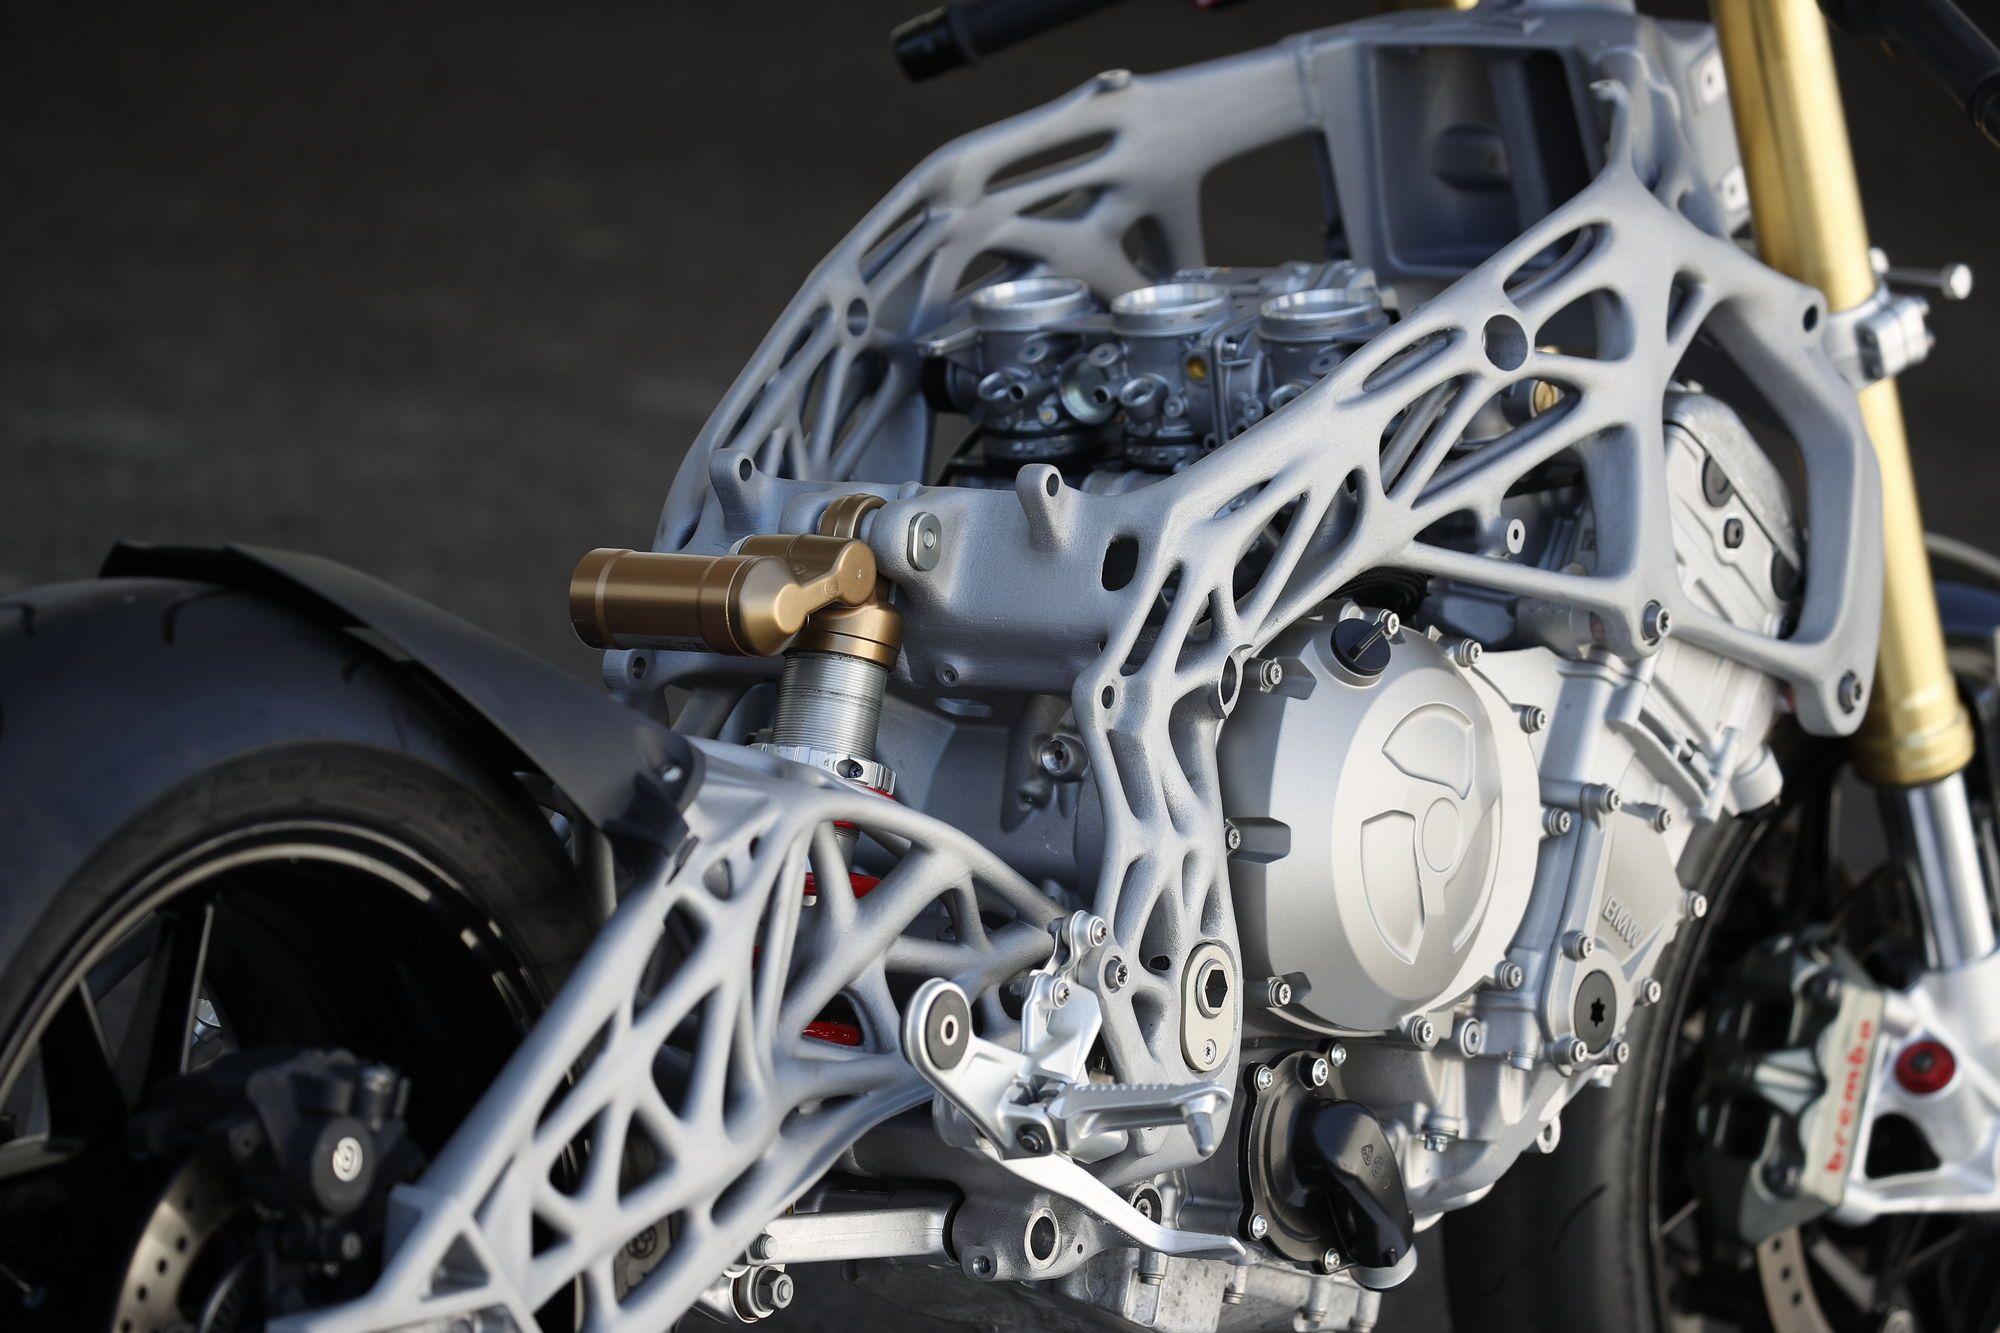 Nu doar mașinile, ci și motocicletele vor putea fi construite cu piese printate 3D în viitor. Deocamdată vorbim de prototipuri și serii unicat sau mici